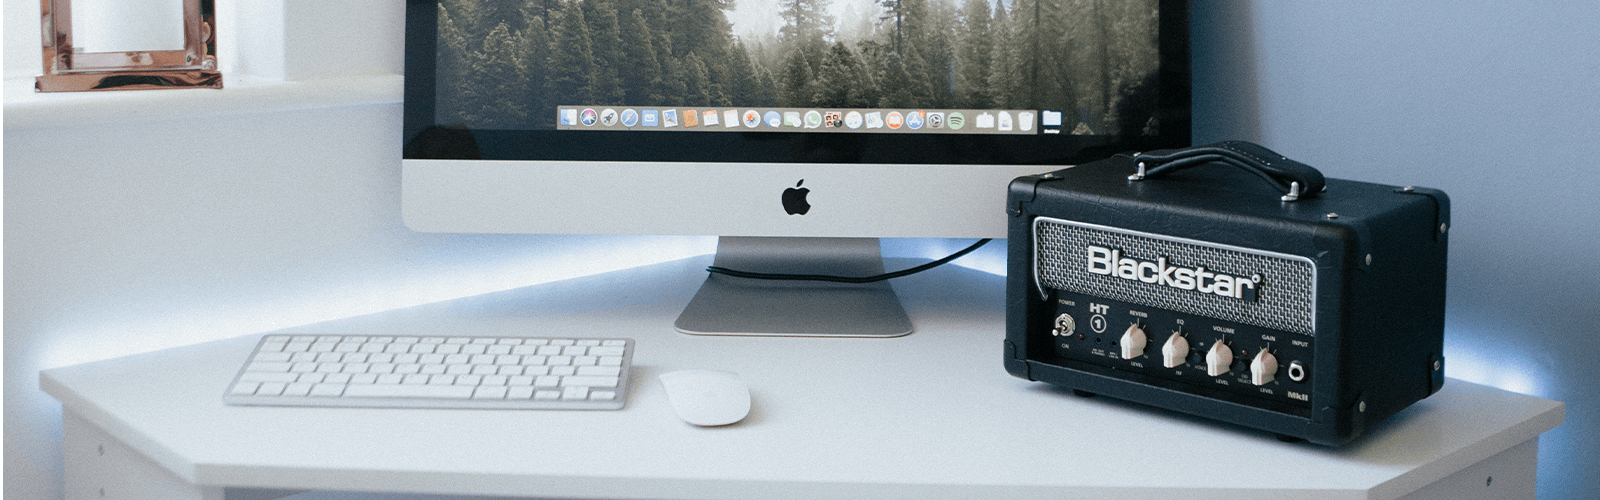 Blackstar Ht-1RH on a desk with an Apple iMac